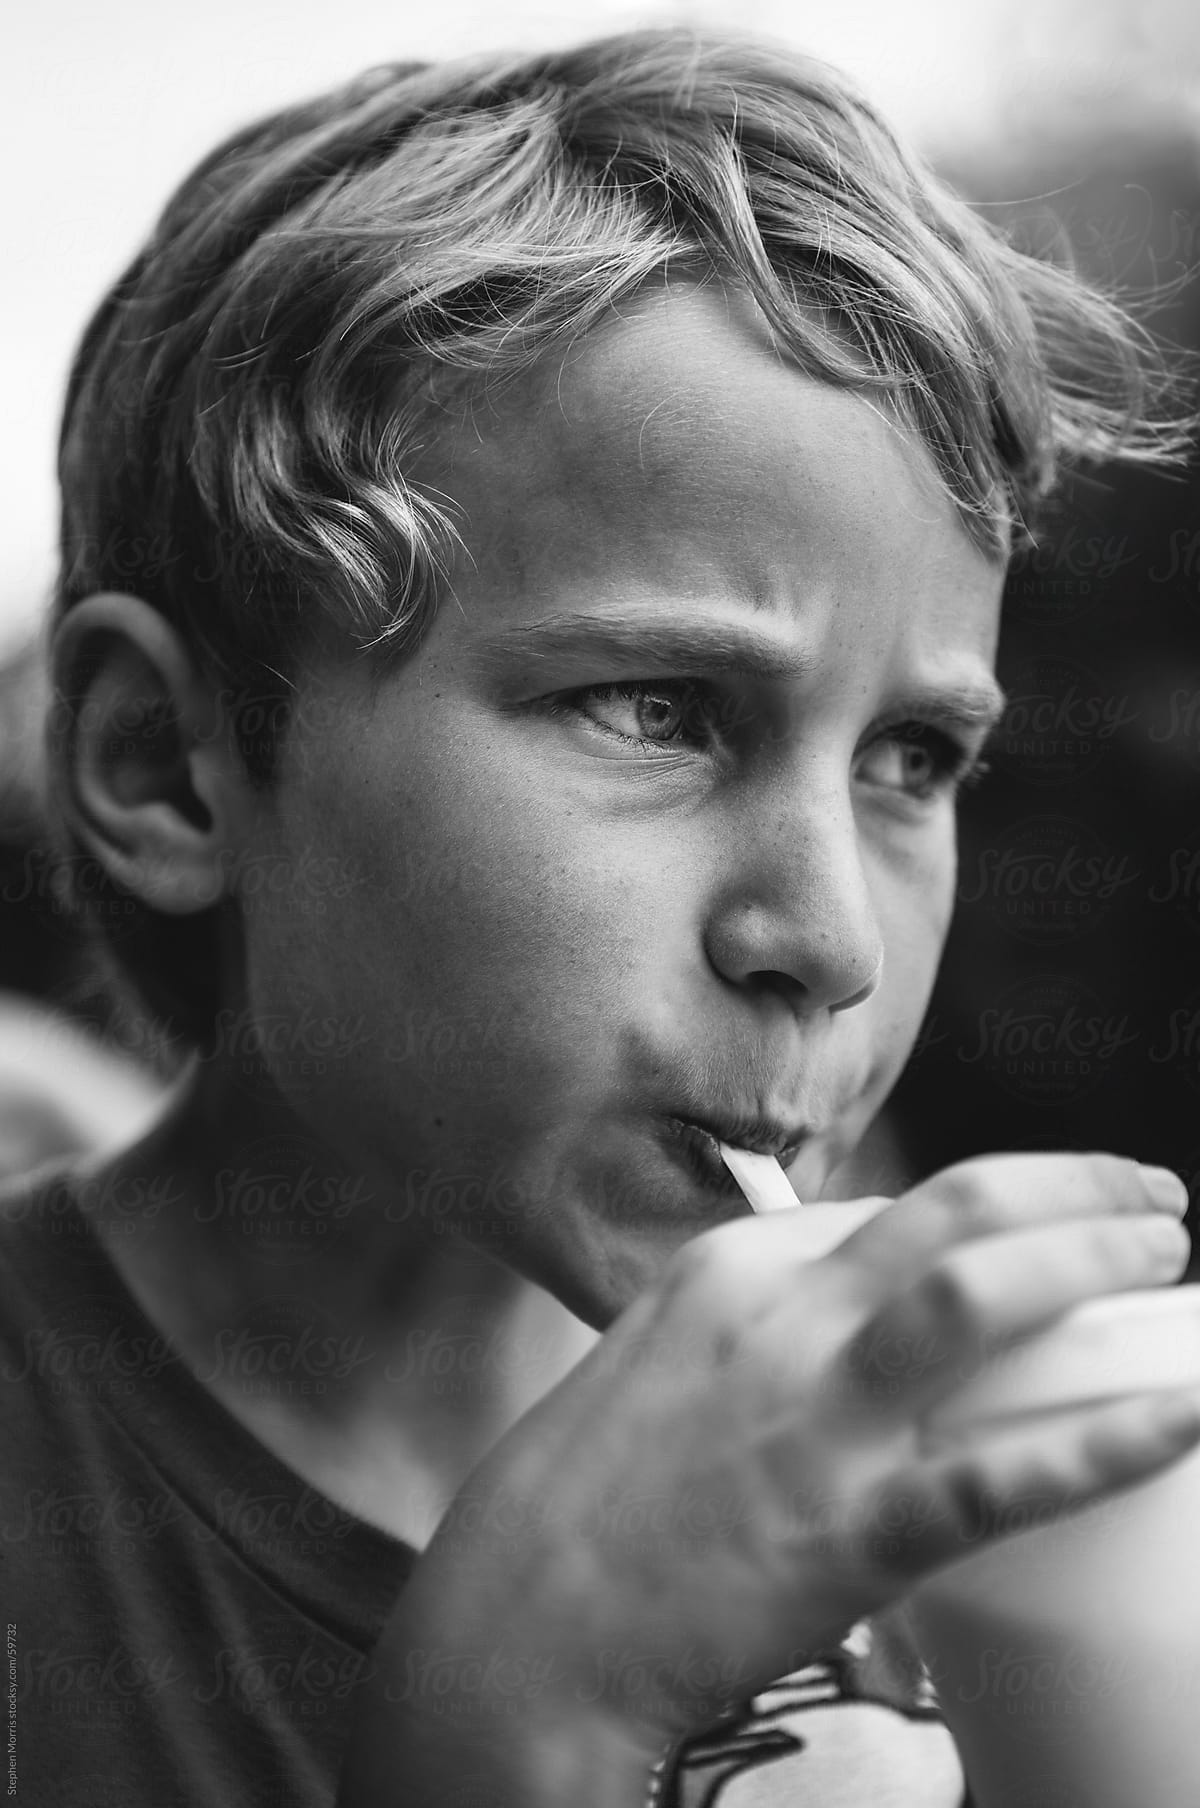 Boy Drinking a Milkshake Through a Straw